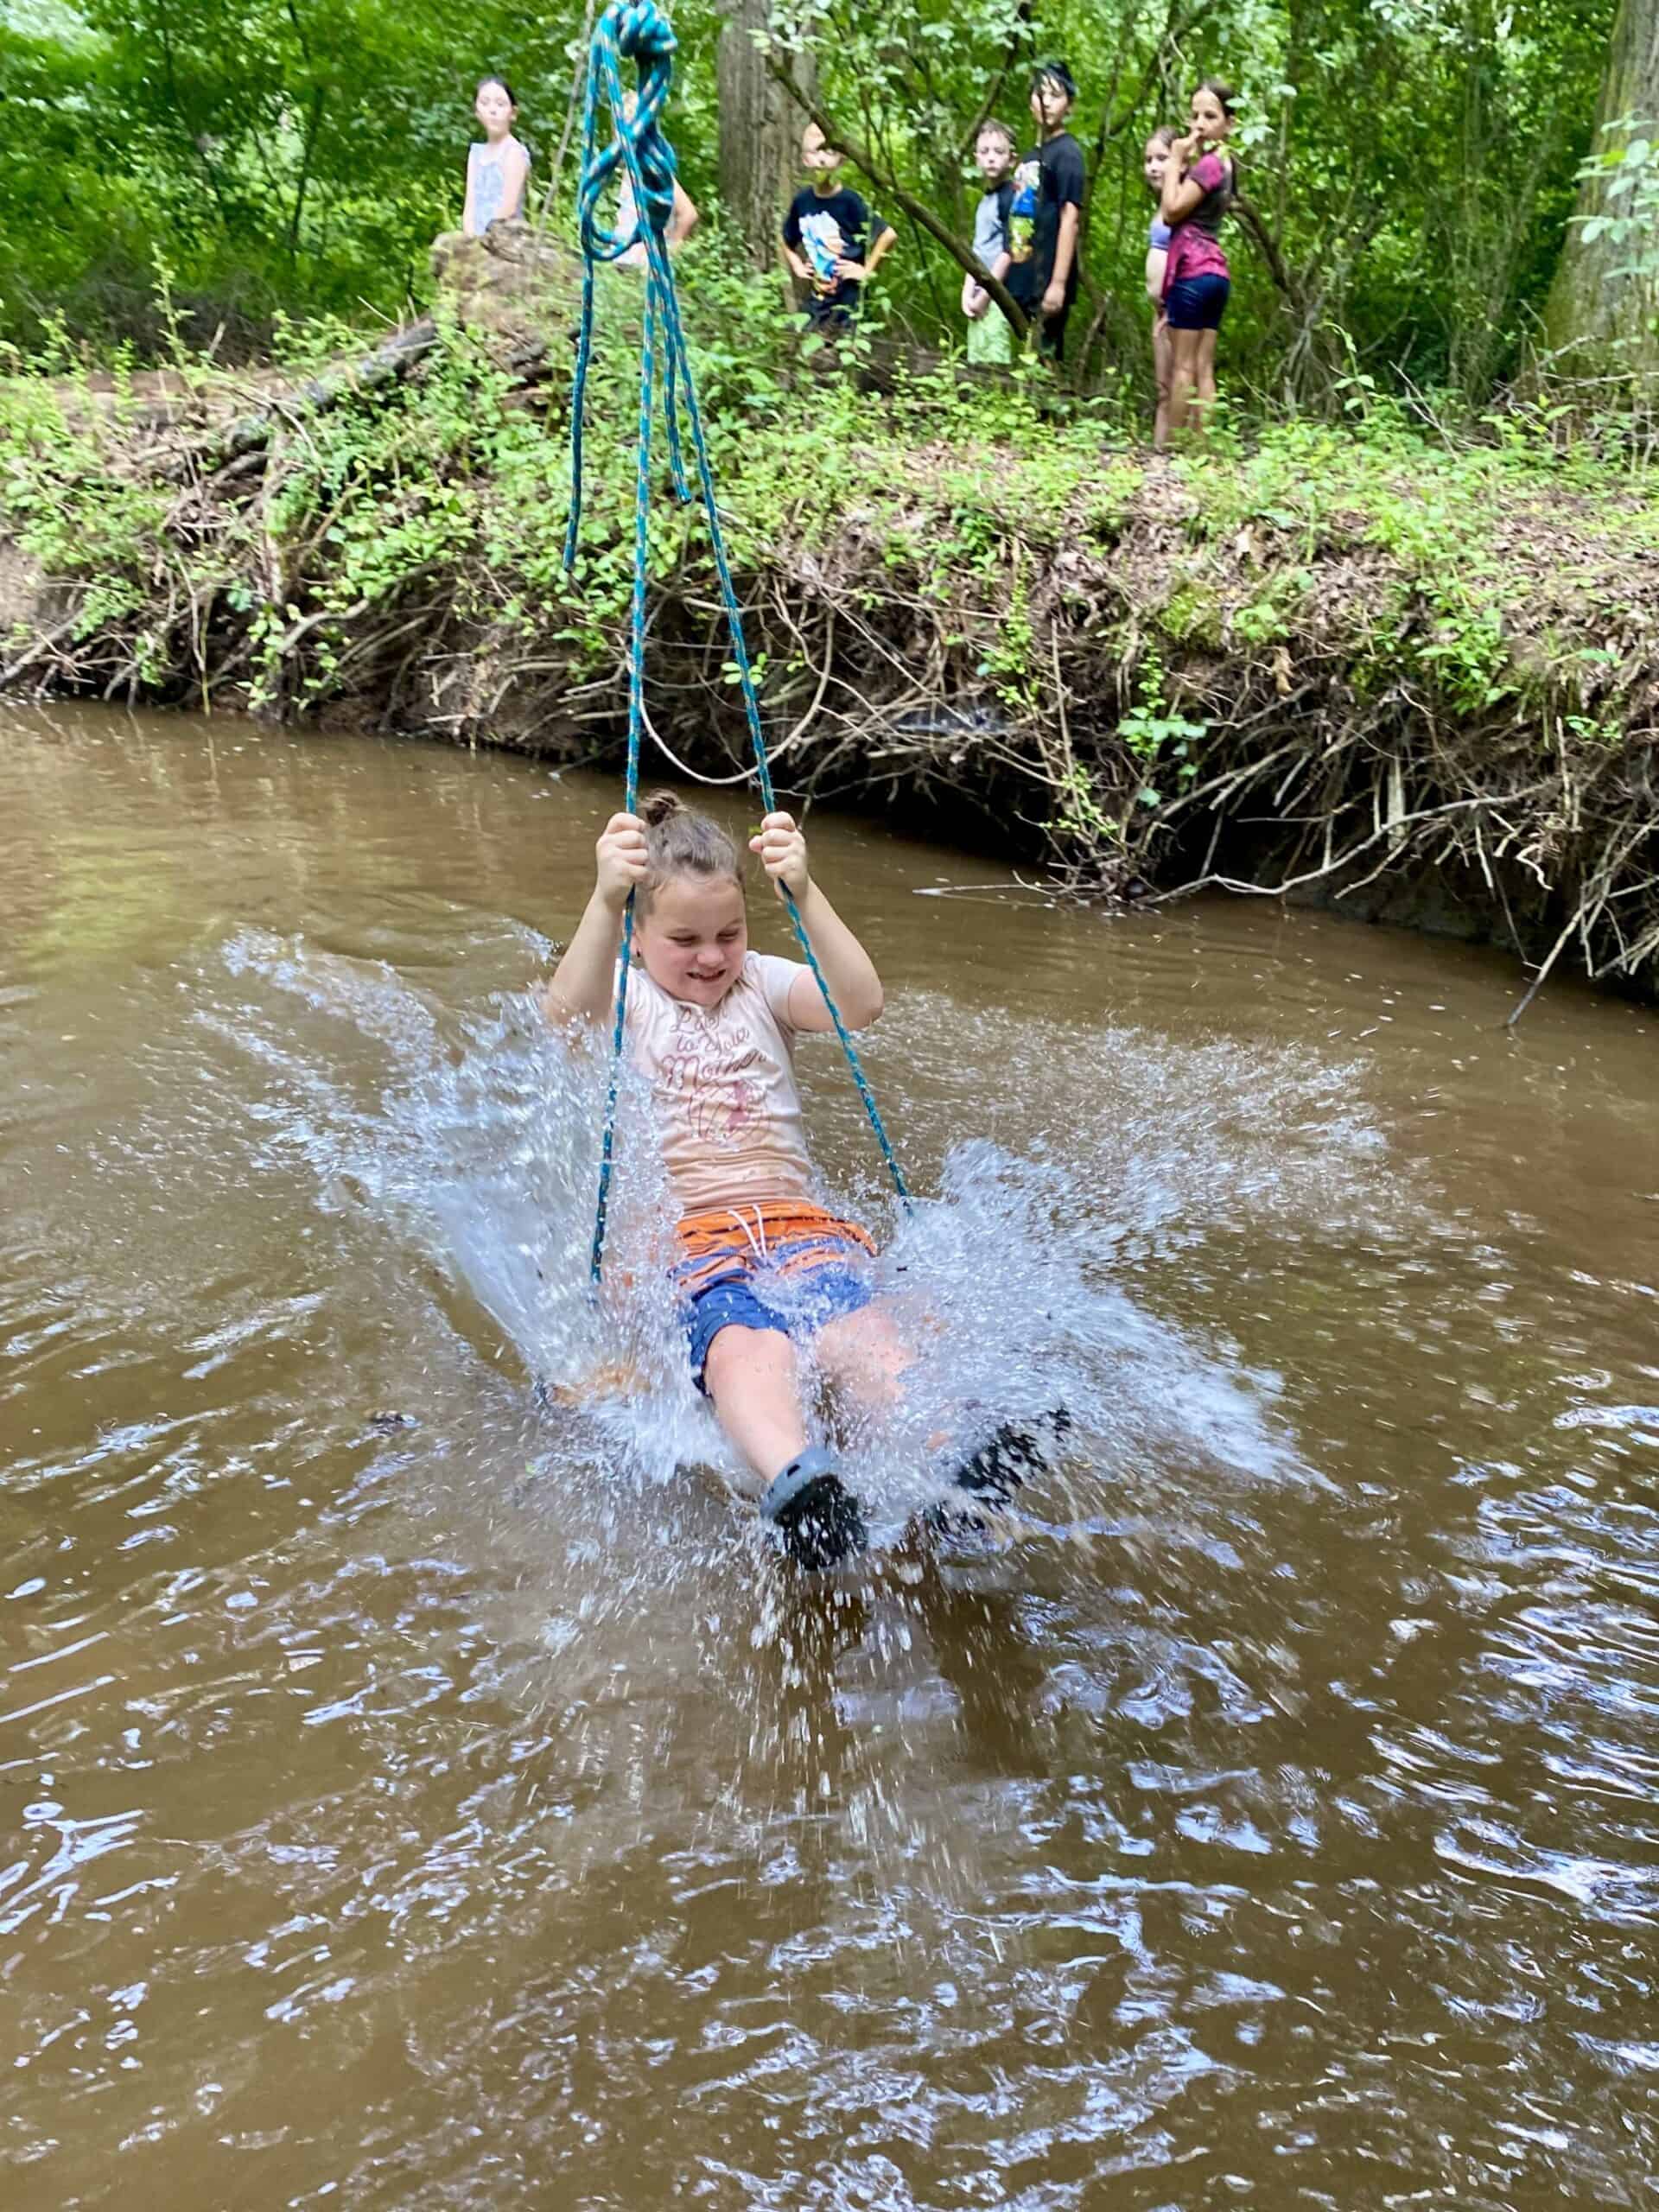 Camper splashing into a creek on a zip line swing